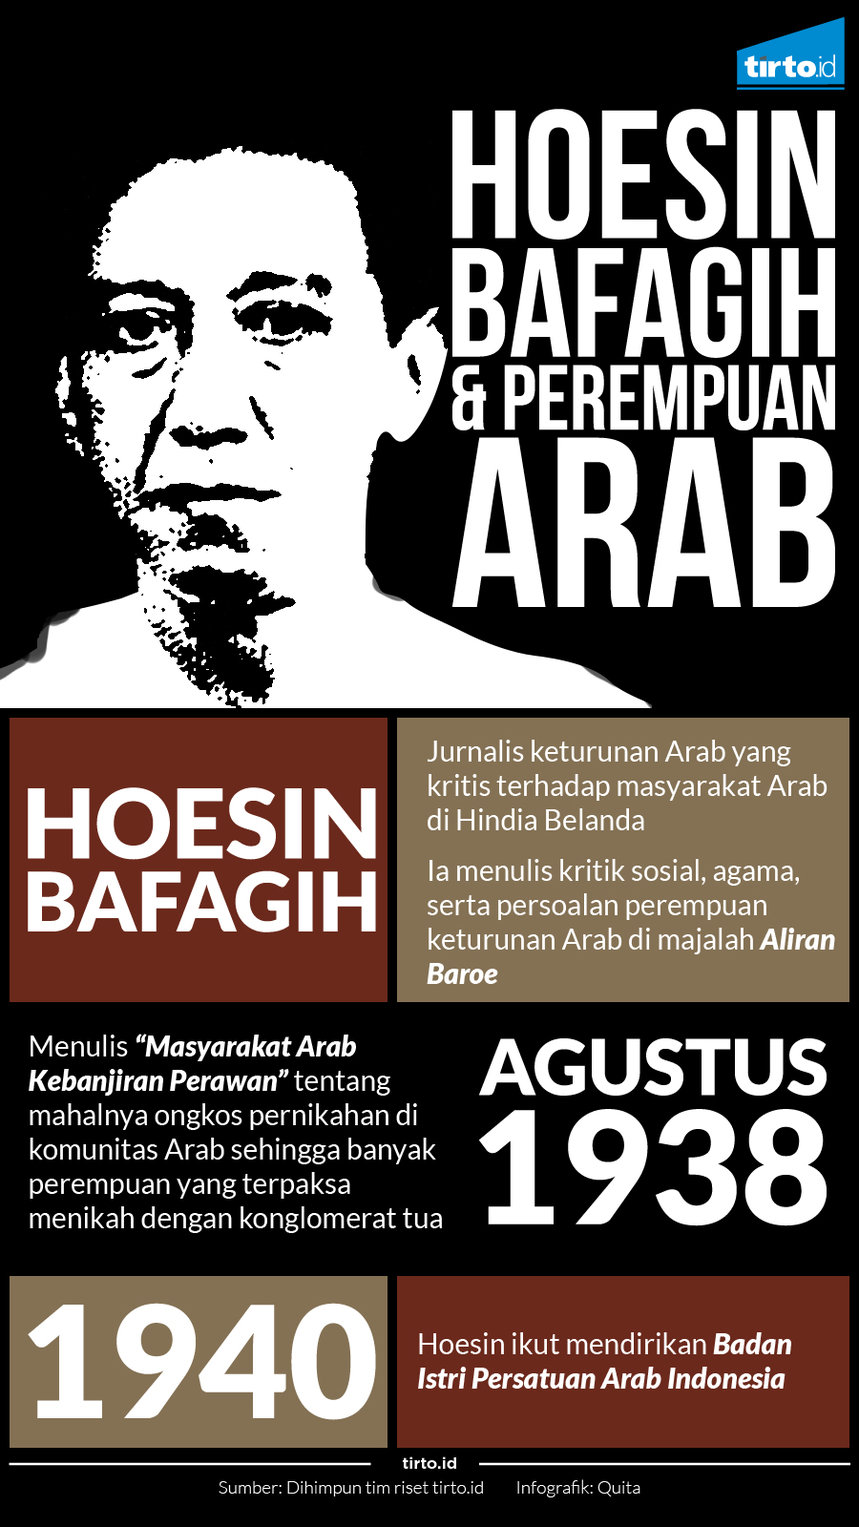 Infografik Hoesin bafagih